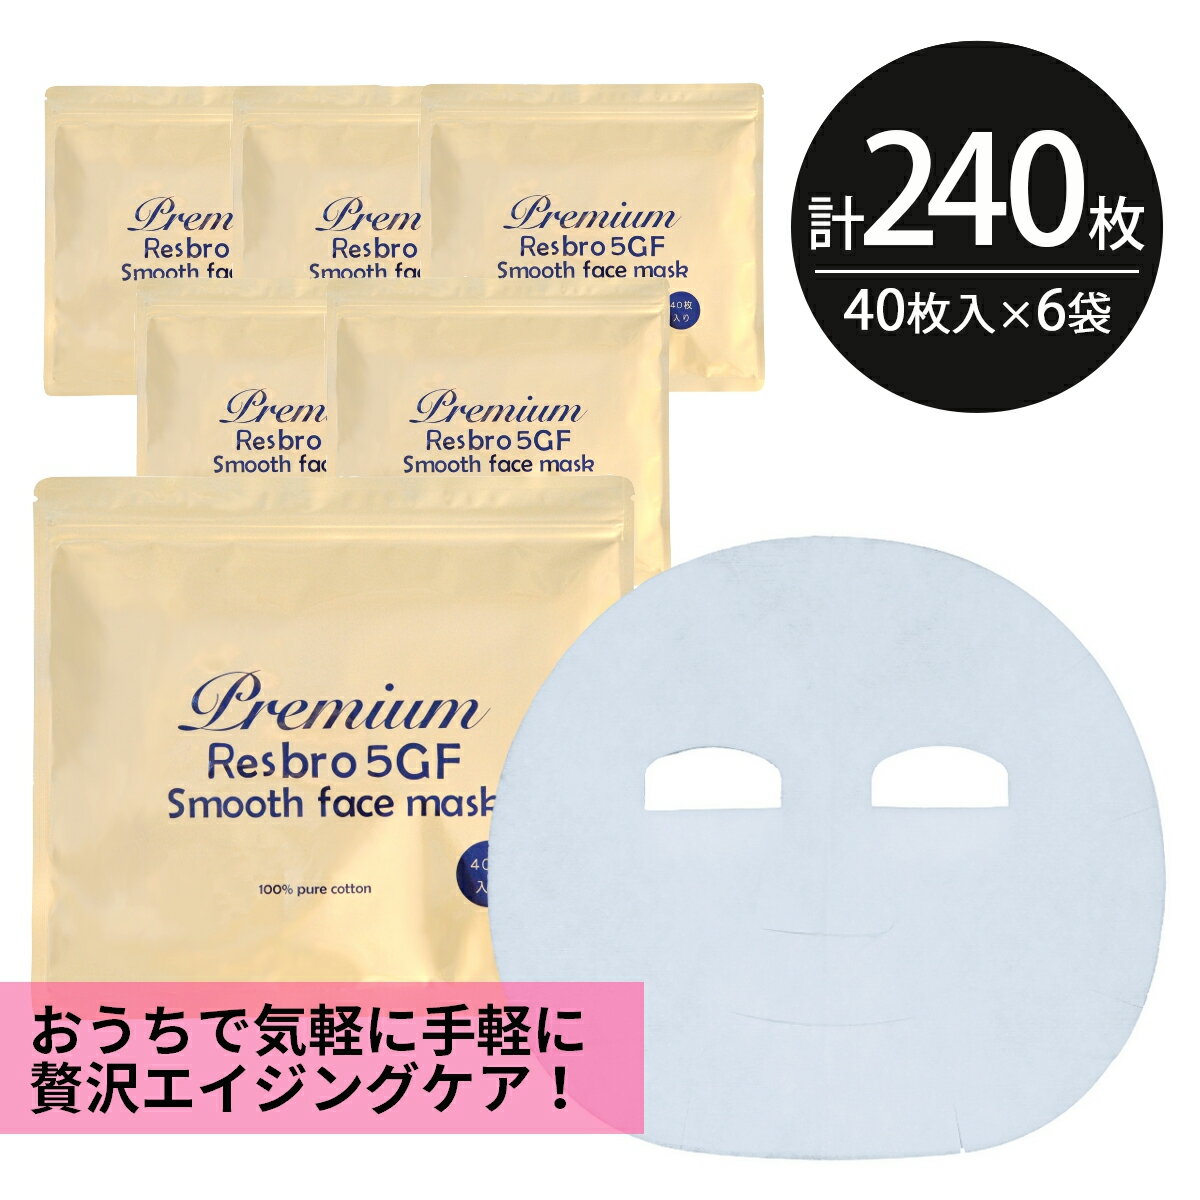 シートマスク パック 240枚大容量 Premium Resbro 5GF Smooth Face Mask レスブロ エイジングケア 保湿 スキンケア 美容 EGF FGF IGF HGF ペプチド フェイスパック シートパック 100枚以上 日本製 送料無料 お得 母の日